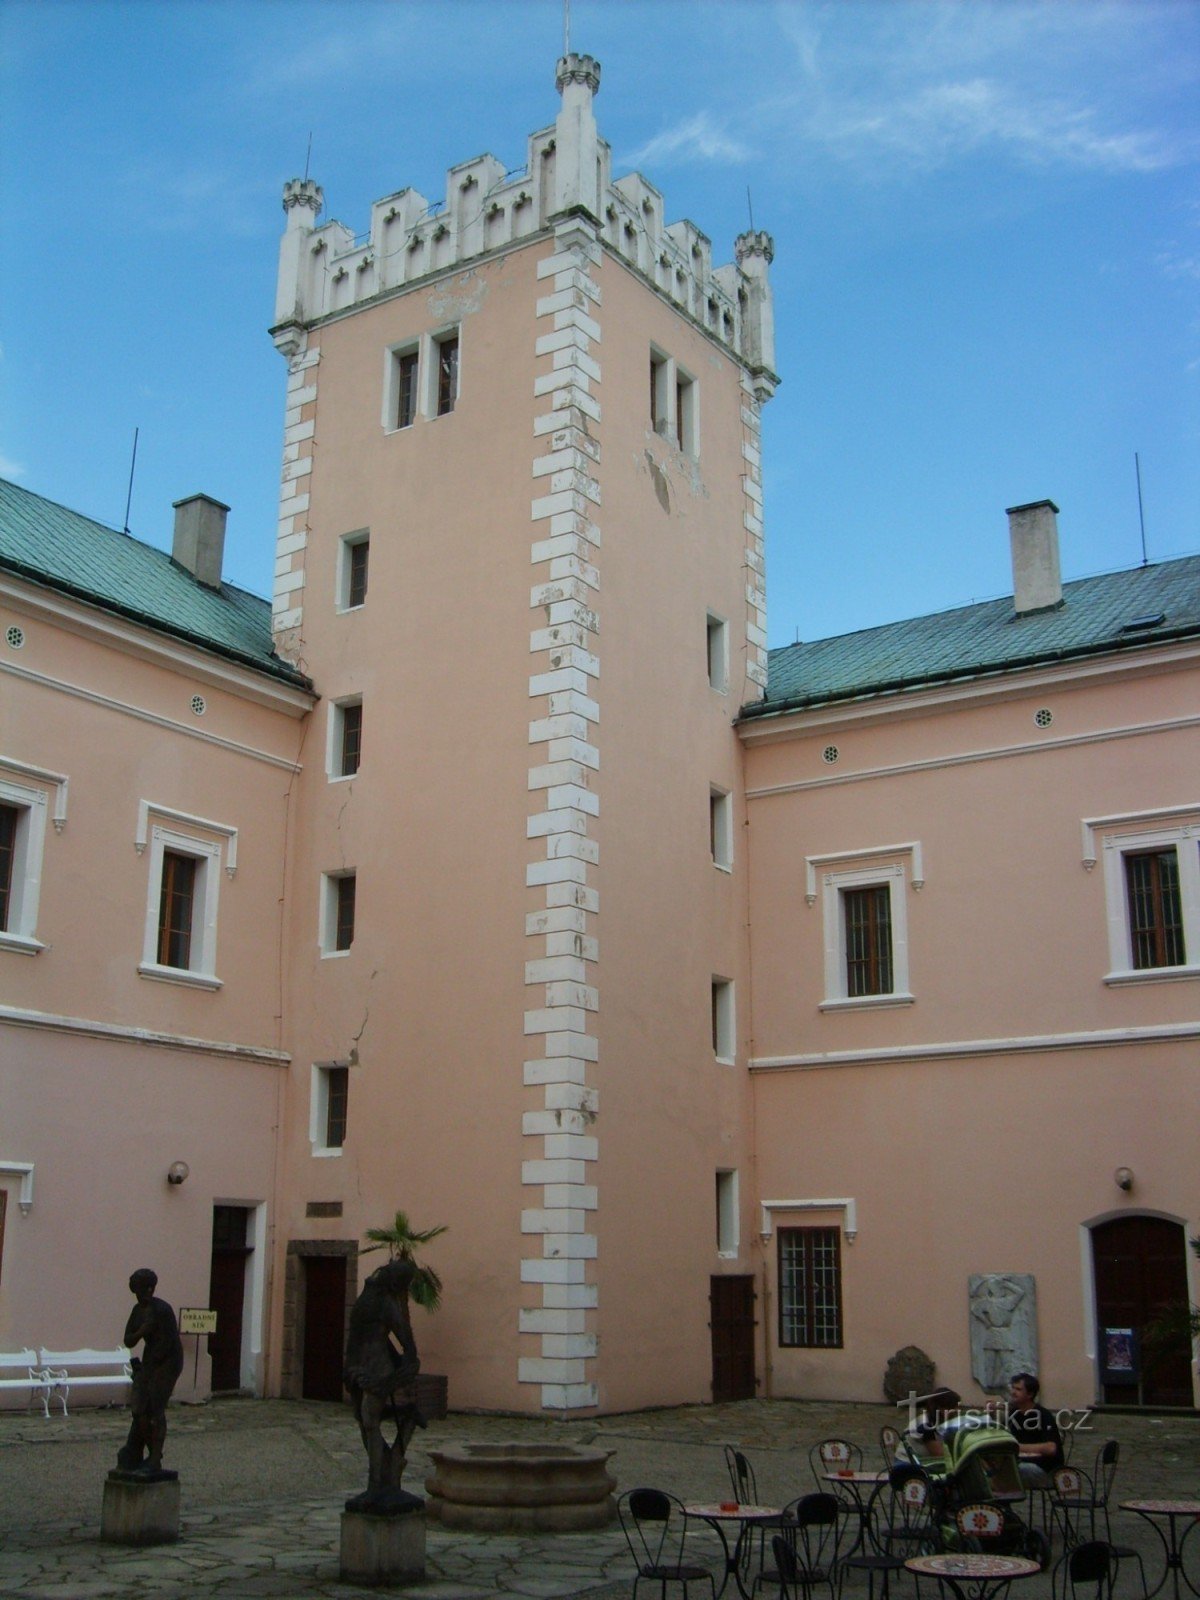 torre do castelo de observação